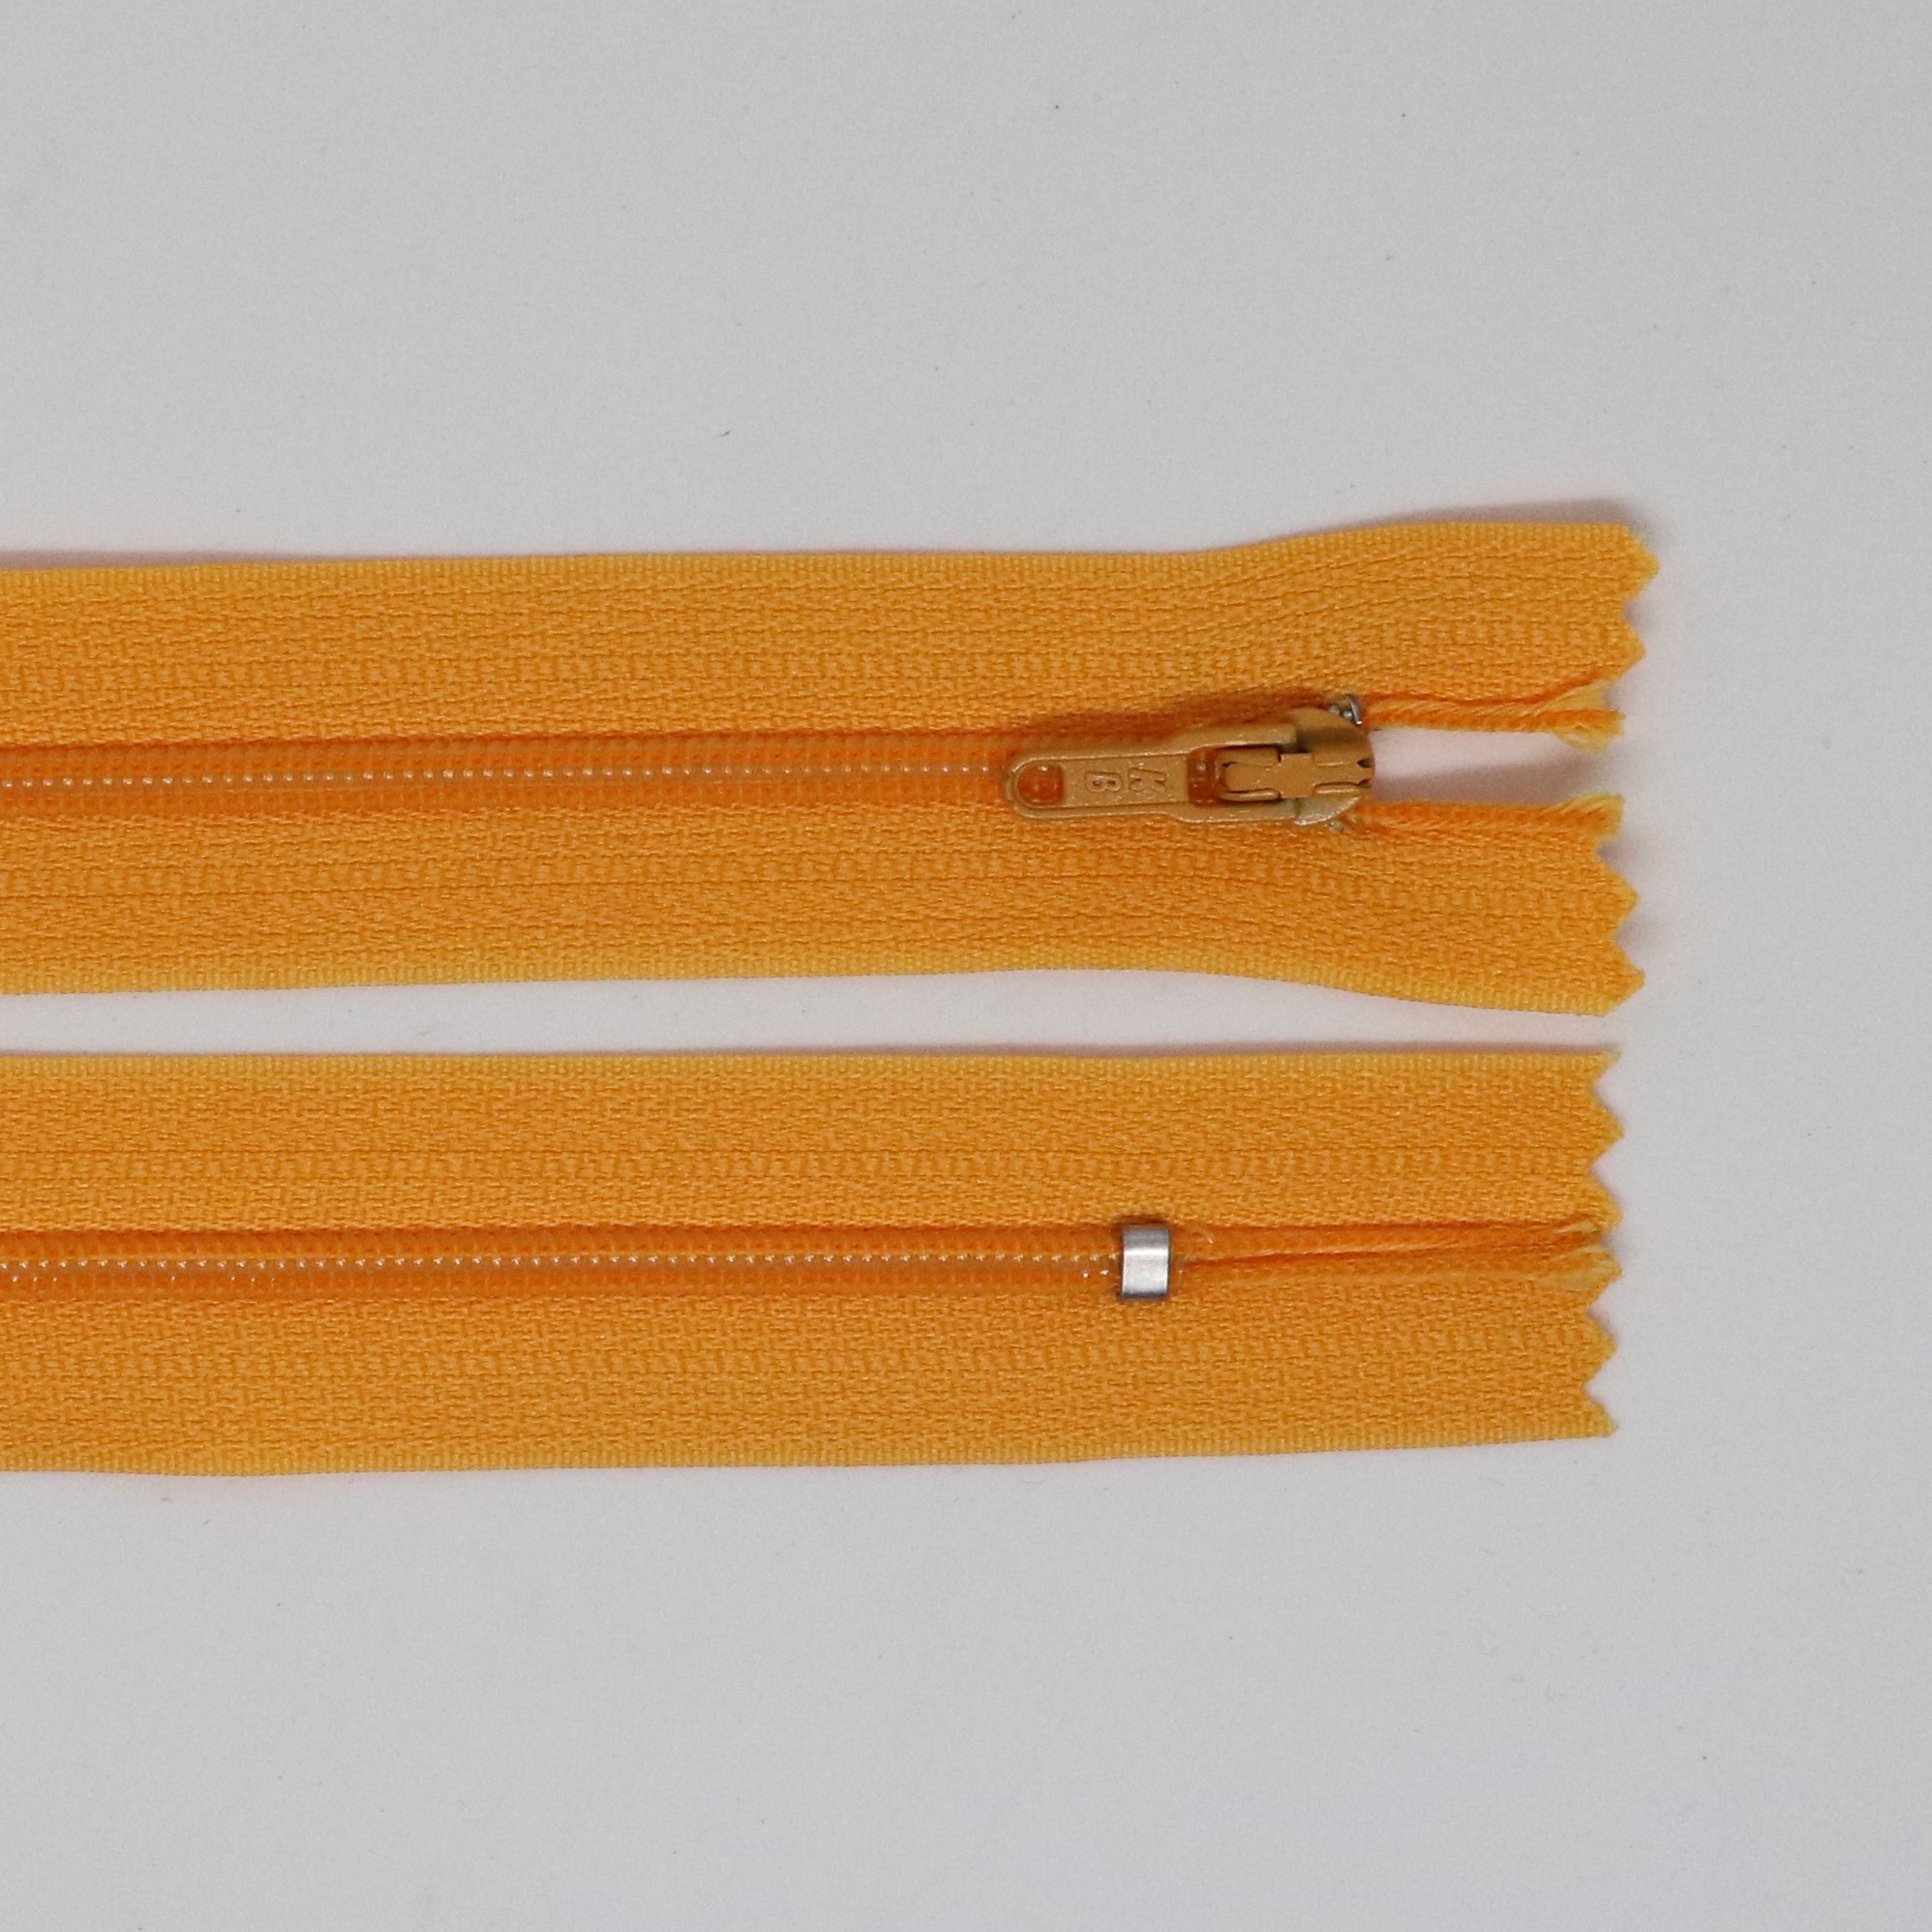 Spirálový zip, šíøe 3 mm, délka 55 cm, oranžová - zvìtšit obrázek